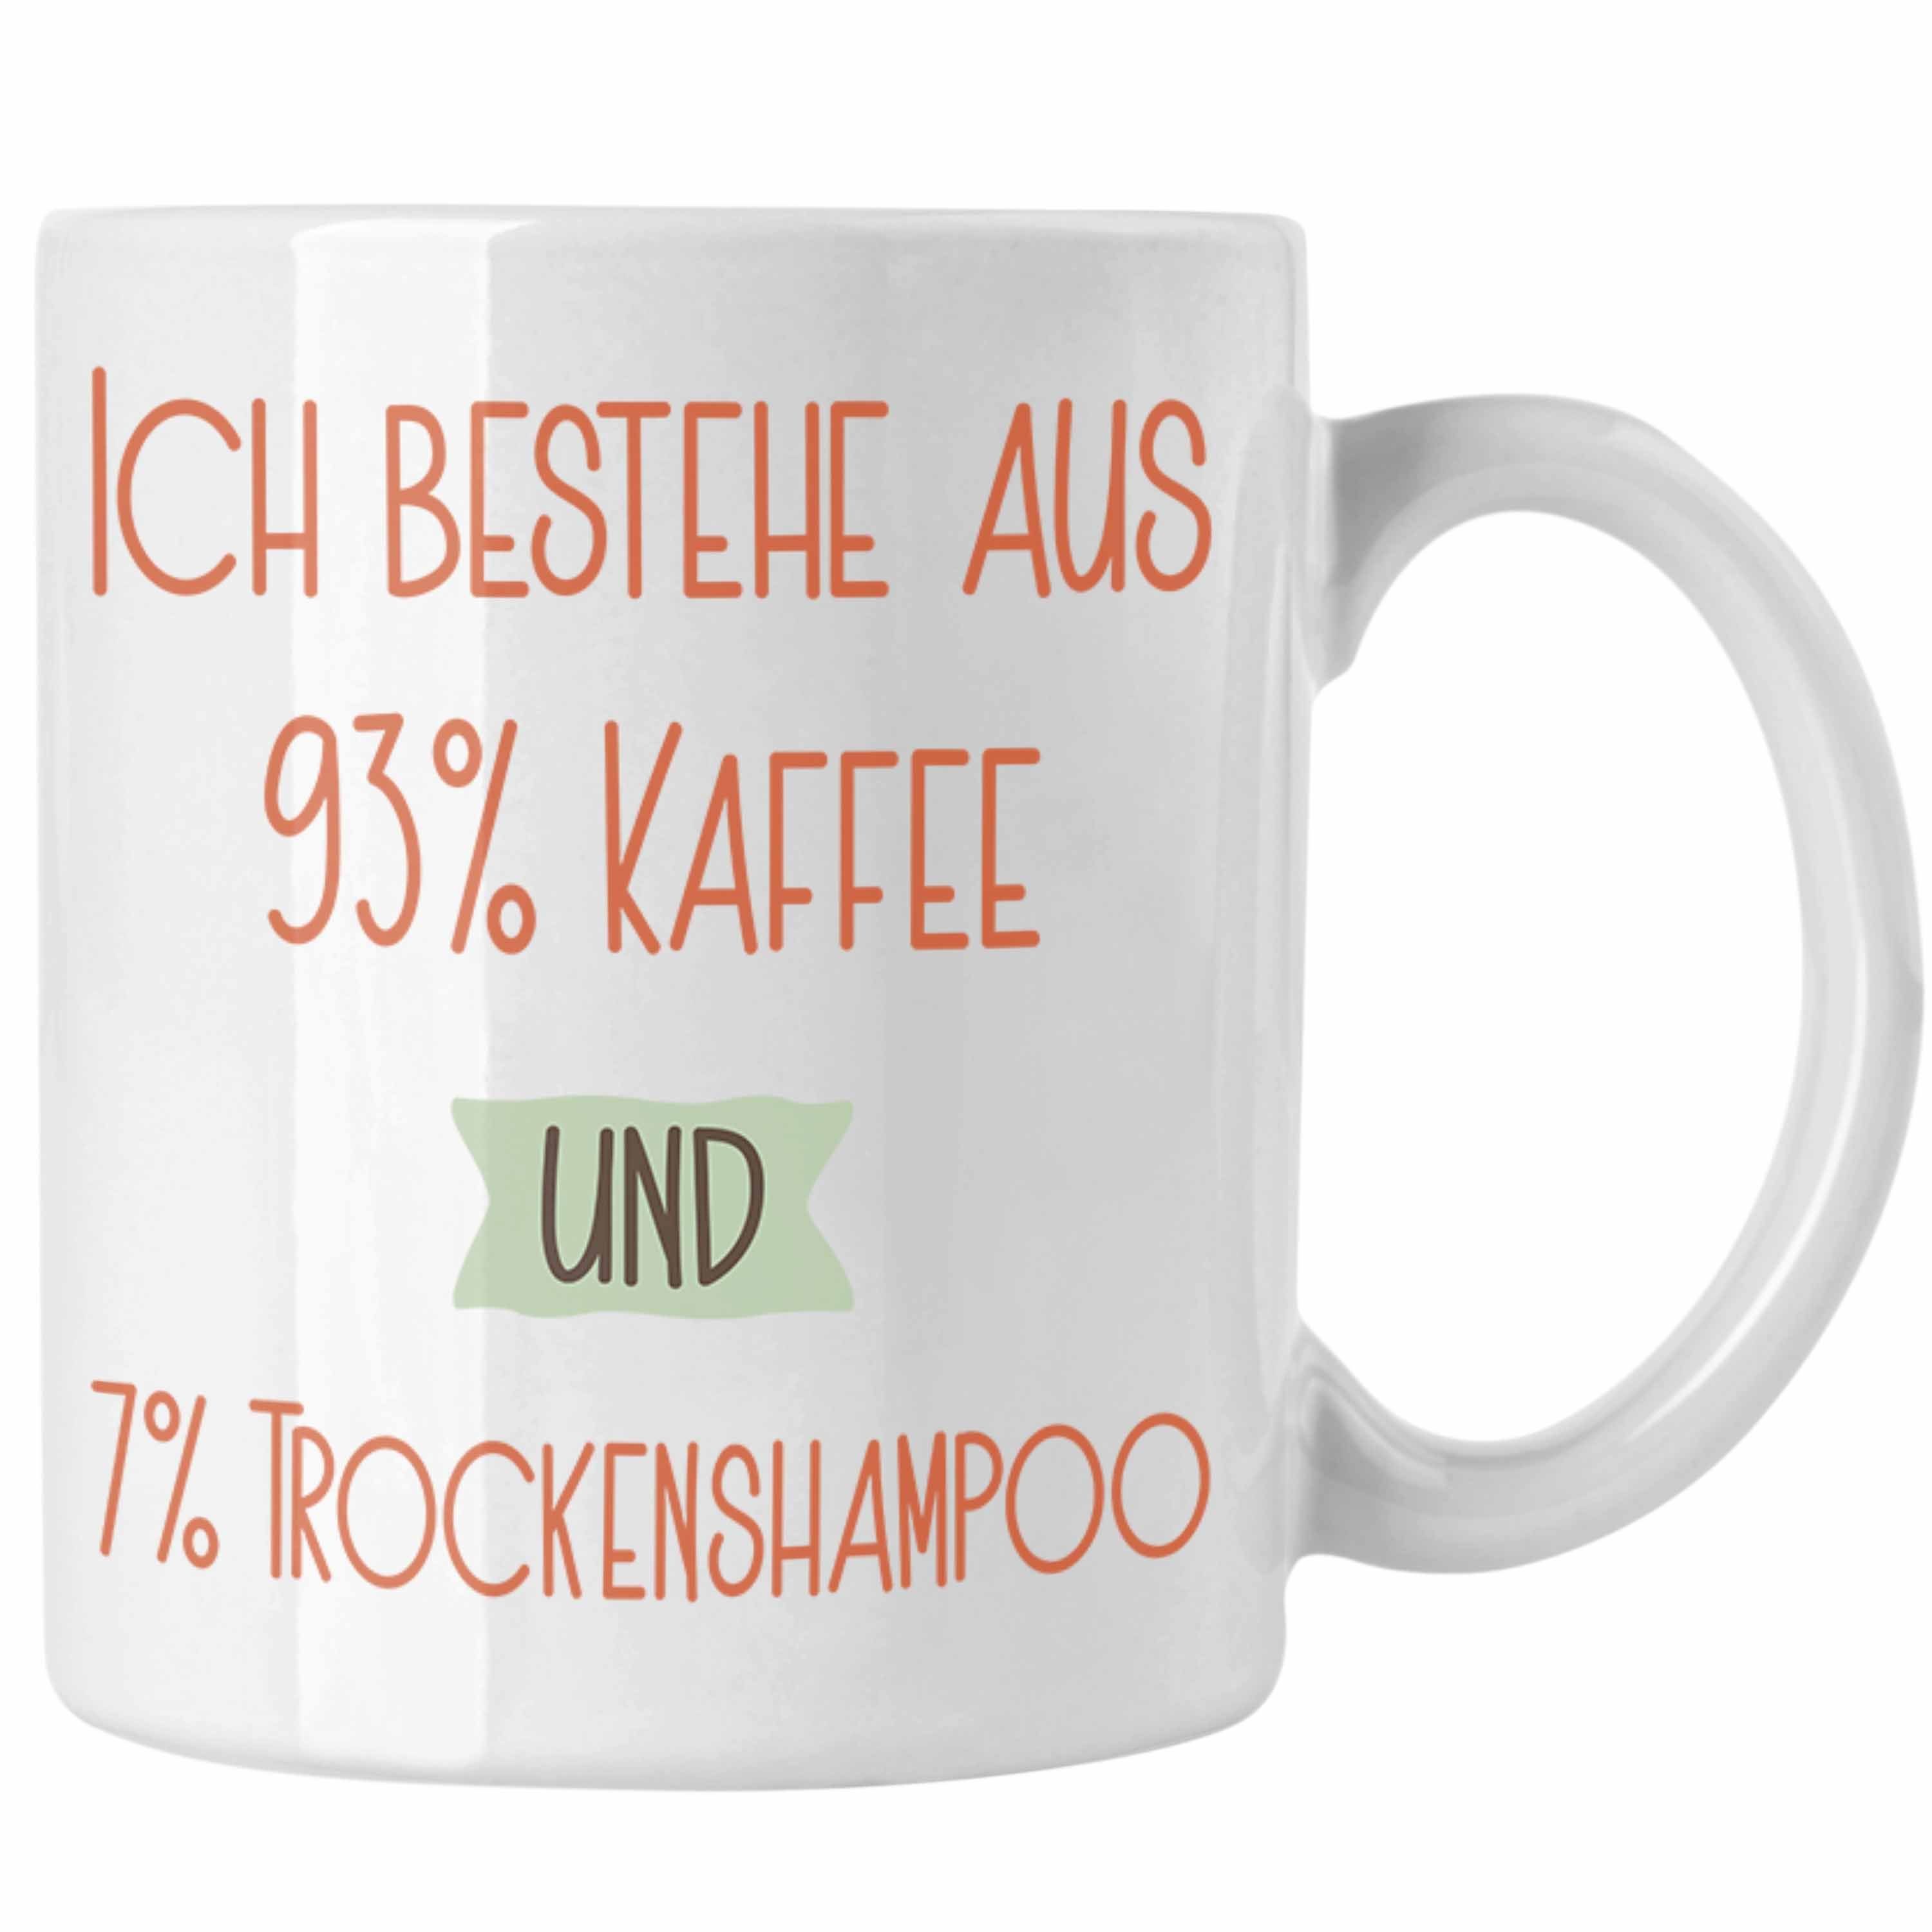 Trendation Tasse 93% Kaffee und 7% Trockenshampoo Tasse Geschenk Lustiger Spruch Für Ko Weiss